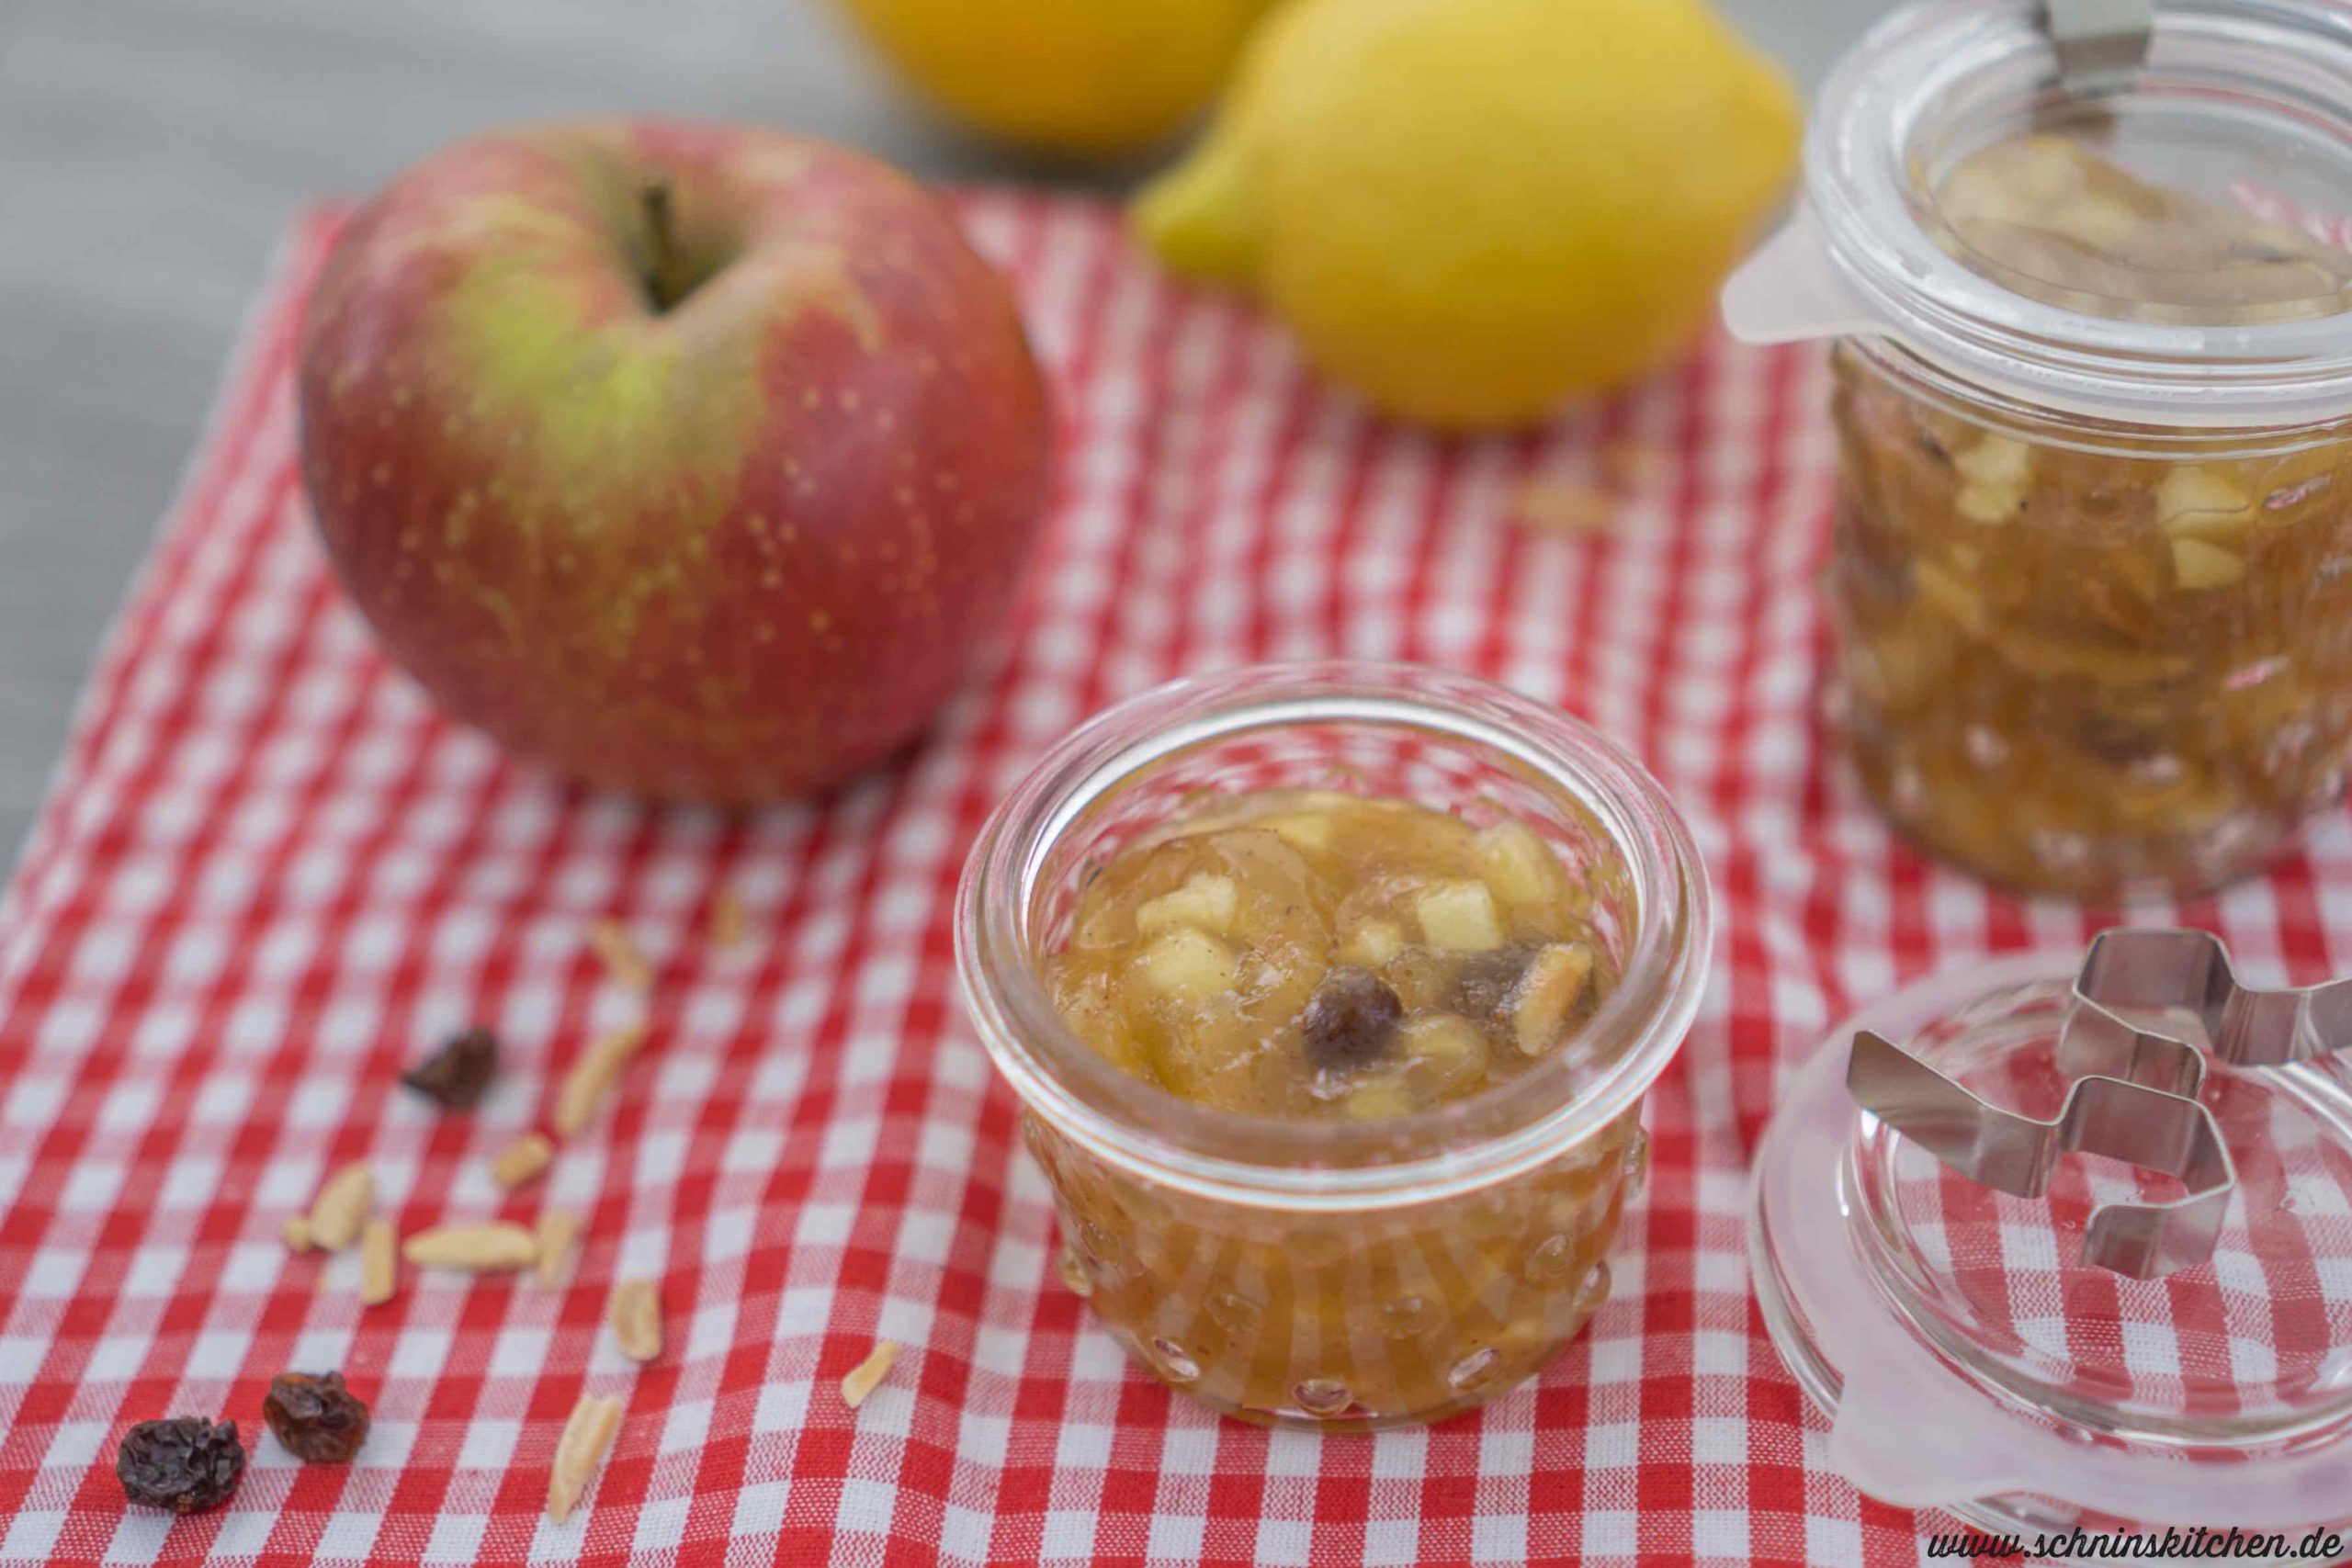 Apfelstrudelmarmelade selber kochen. Ein Rezept für leckeren Brotaufstrich aus Äpfeln, der schmeckt wie Apfelstrudel im Glas. | www.schninskitchen.de